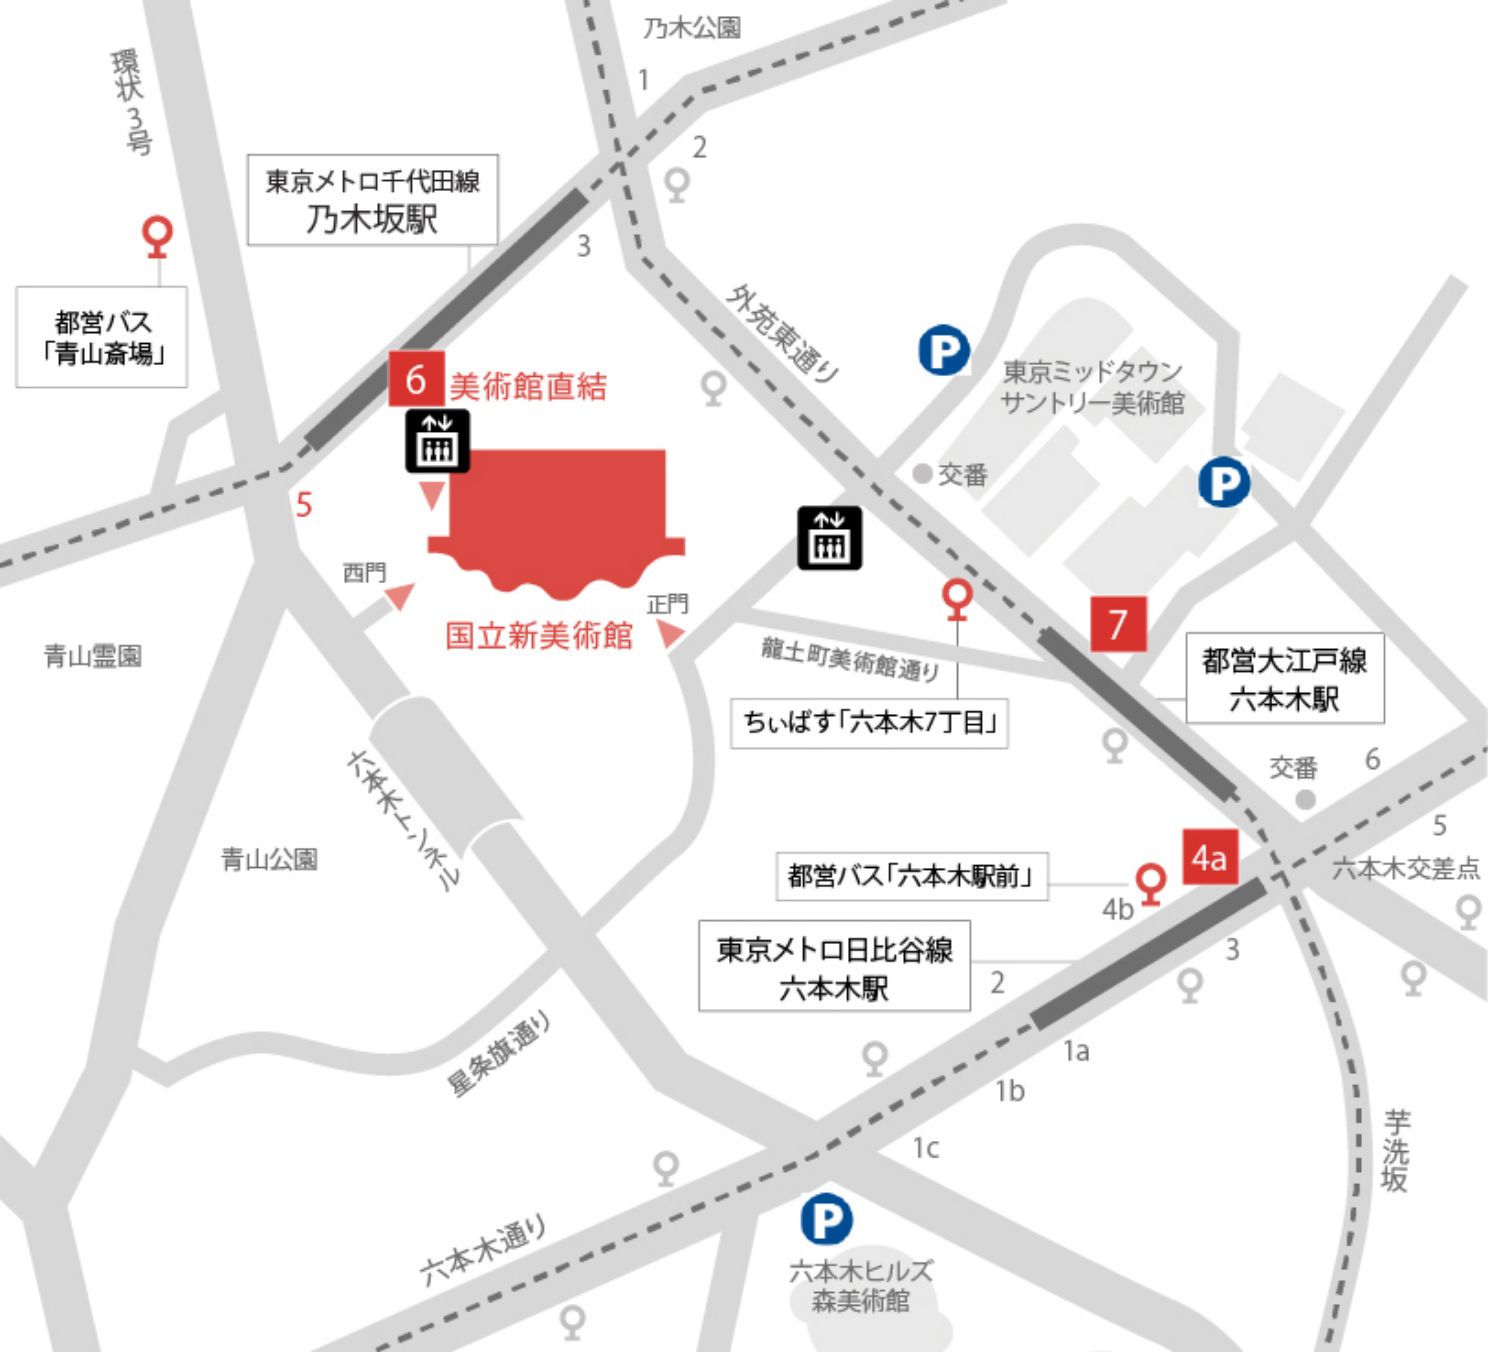 National Art Center, Tokyo map